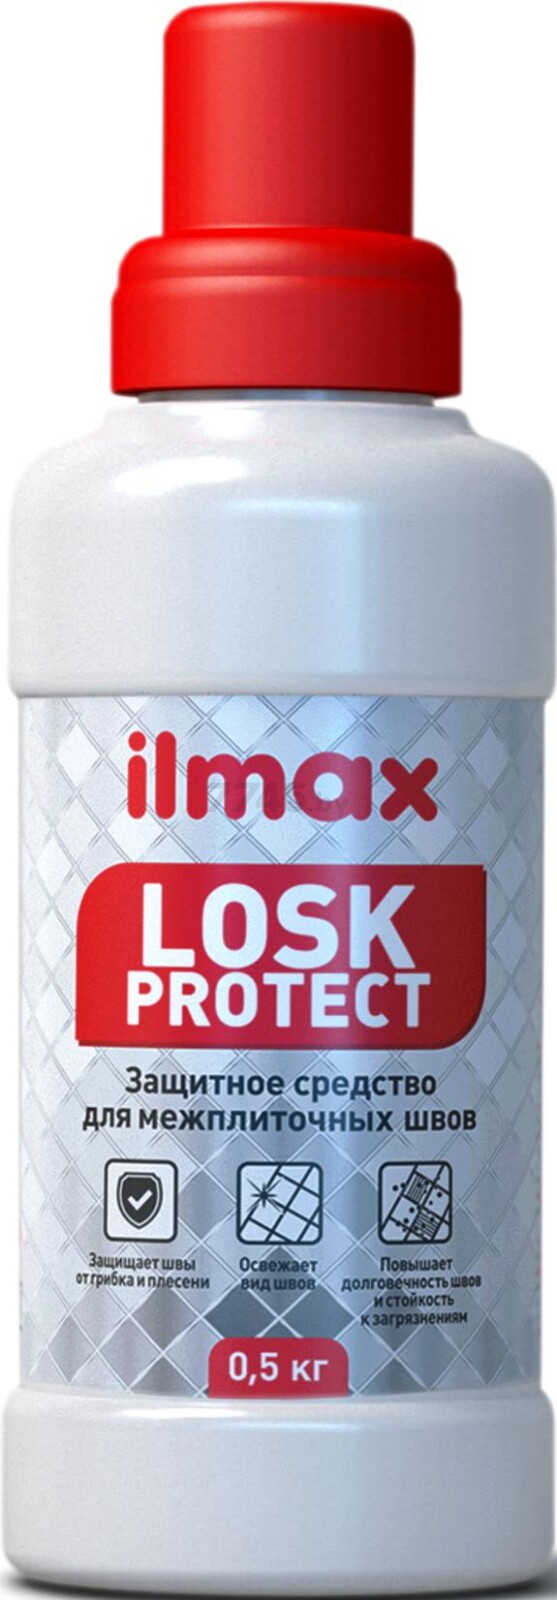 Средство защитное для швов ILMAX Losk protect 0,5 кг